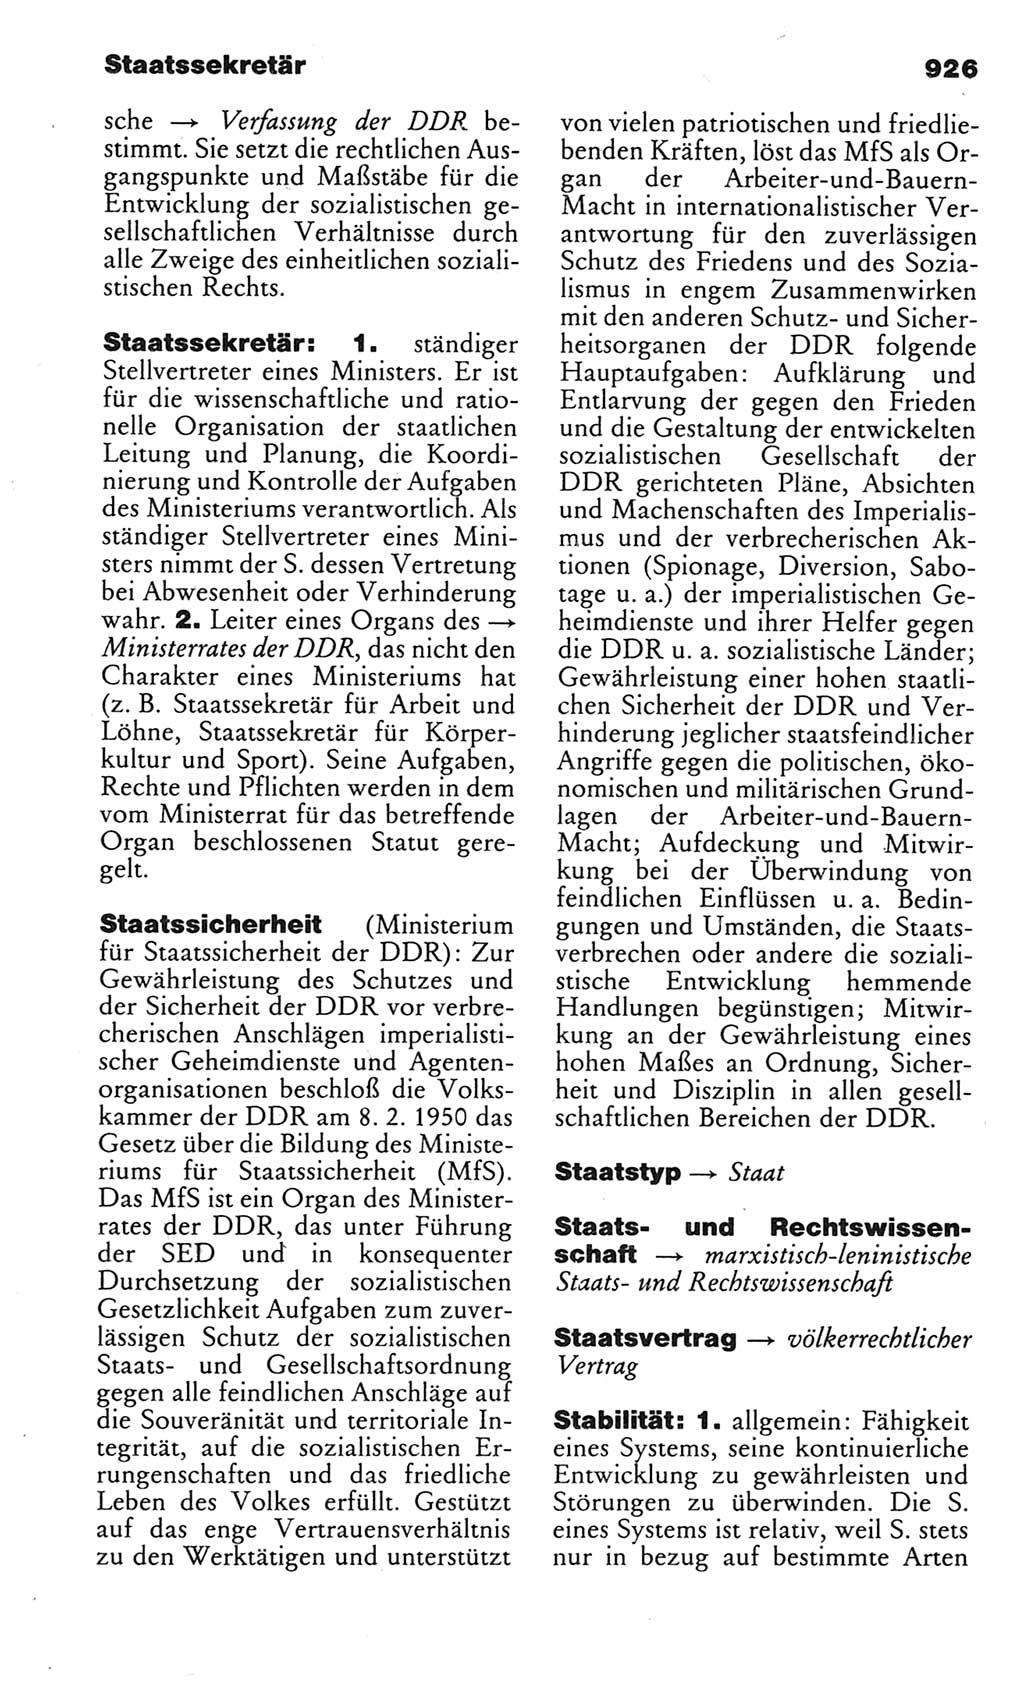 Kleines politisches Wörterbuch [Deutsche Demokratische Republik (DDR)] 1983, Seite 926 (Kl. pol. Wb. DDR 1983, S. 926)